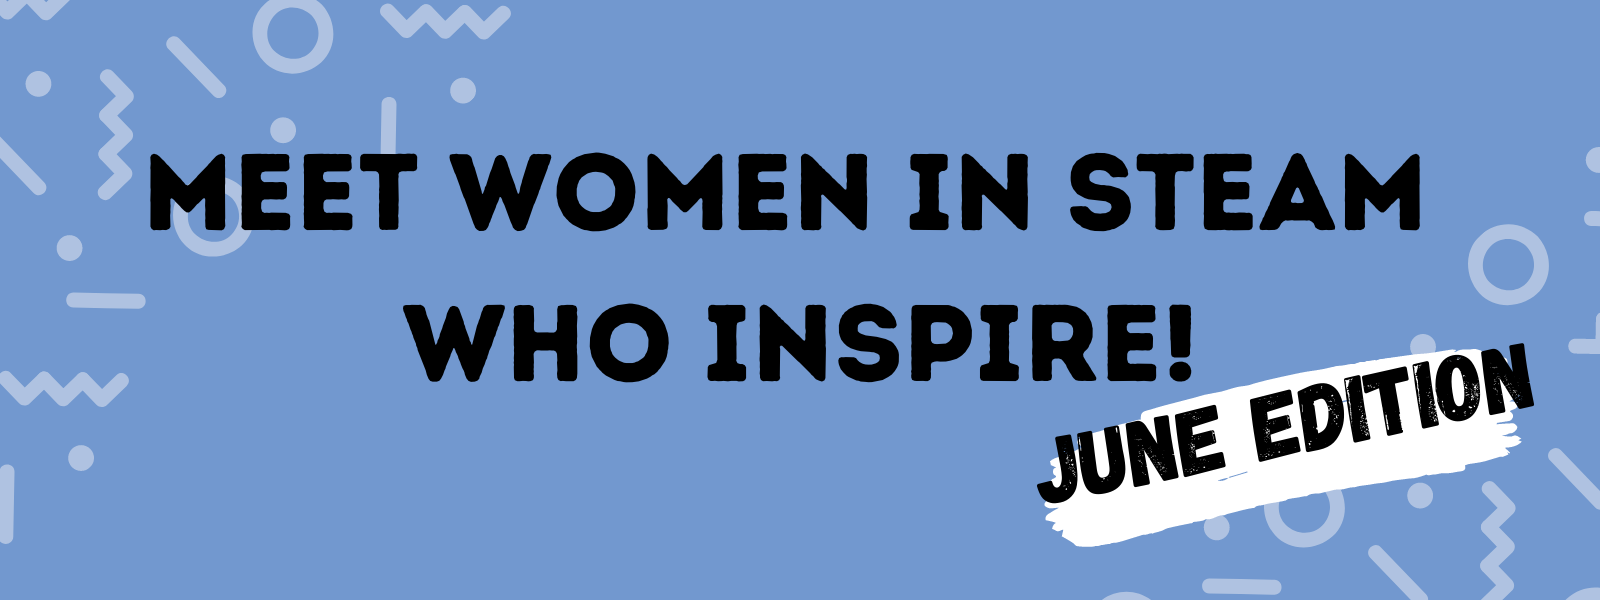 Meet women in STEAM who inspire